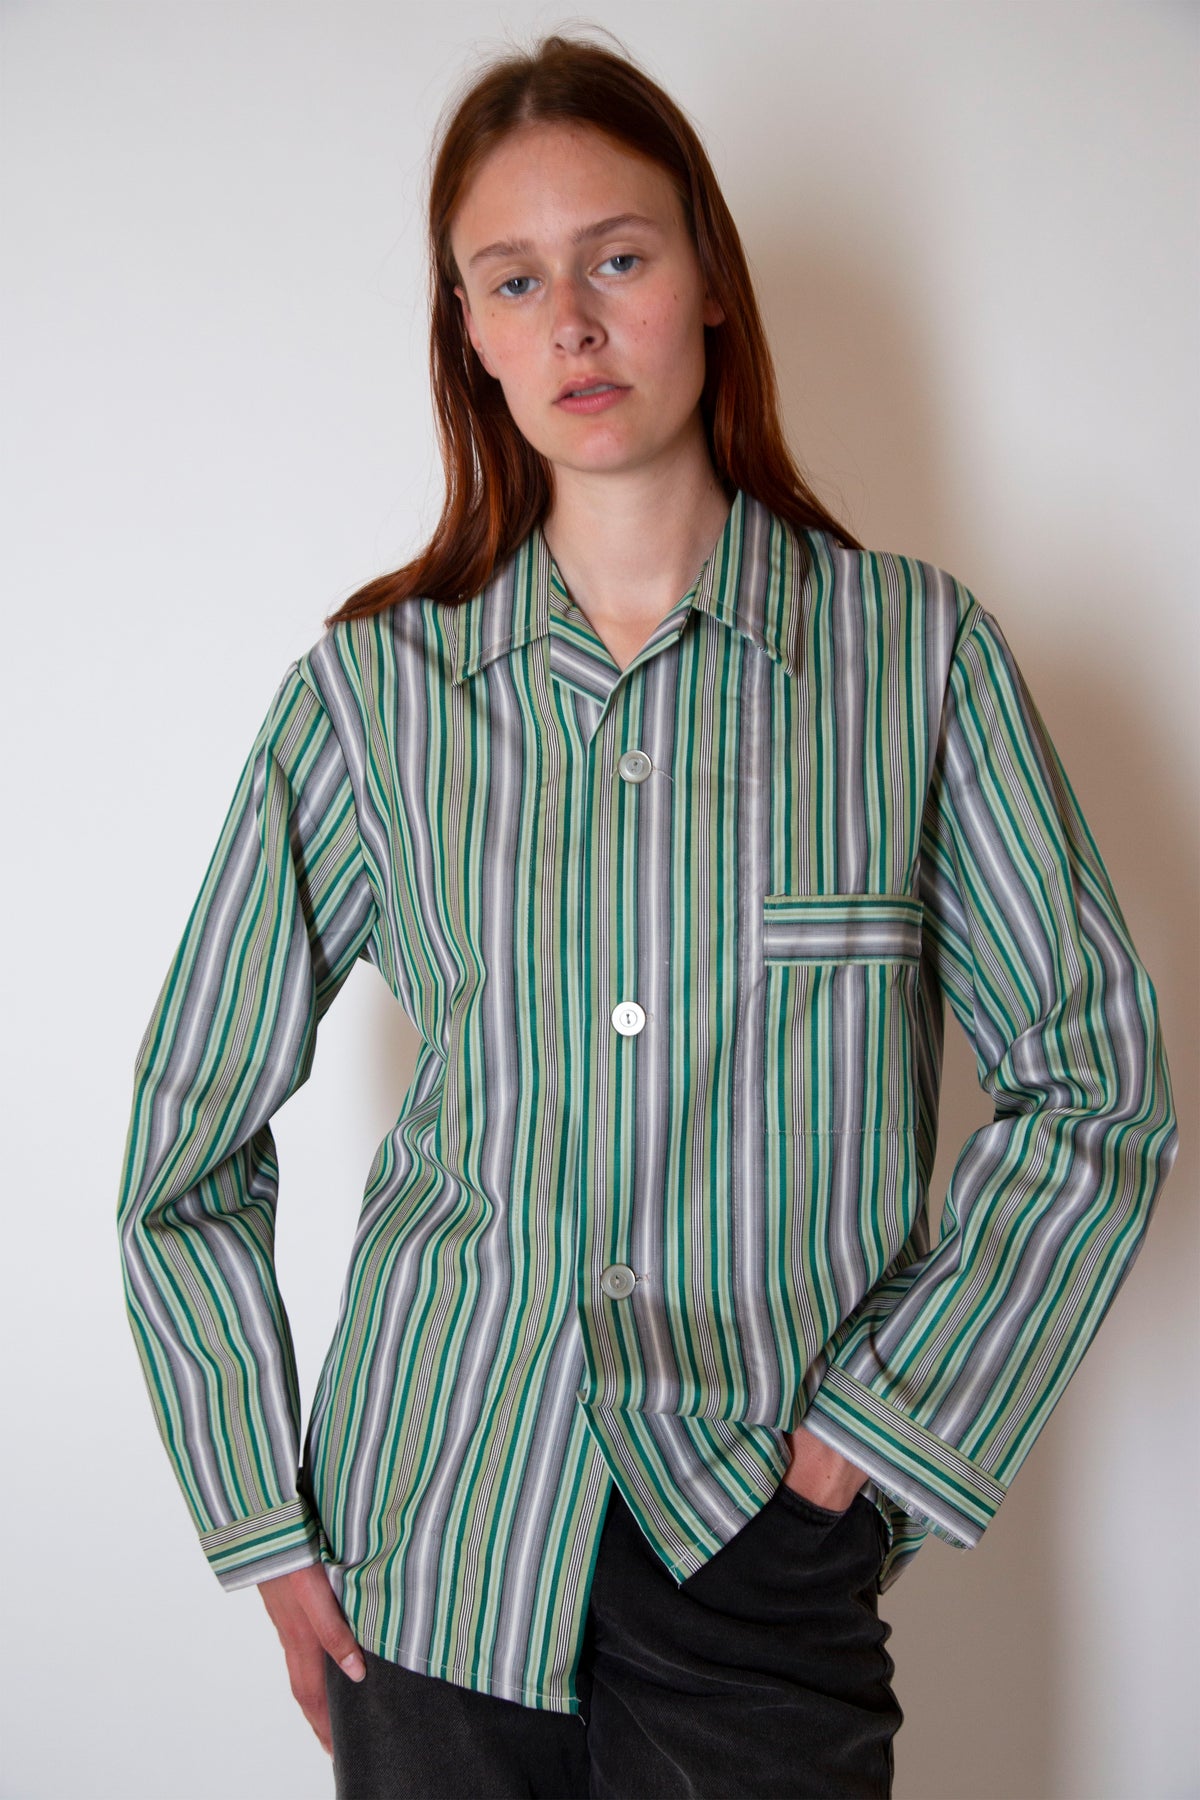 Vintage pajamas shirt